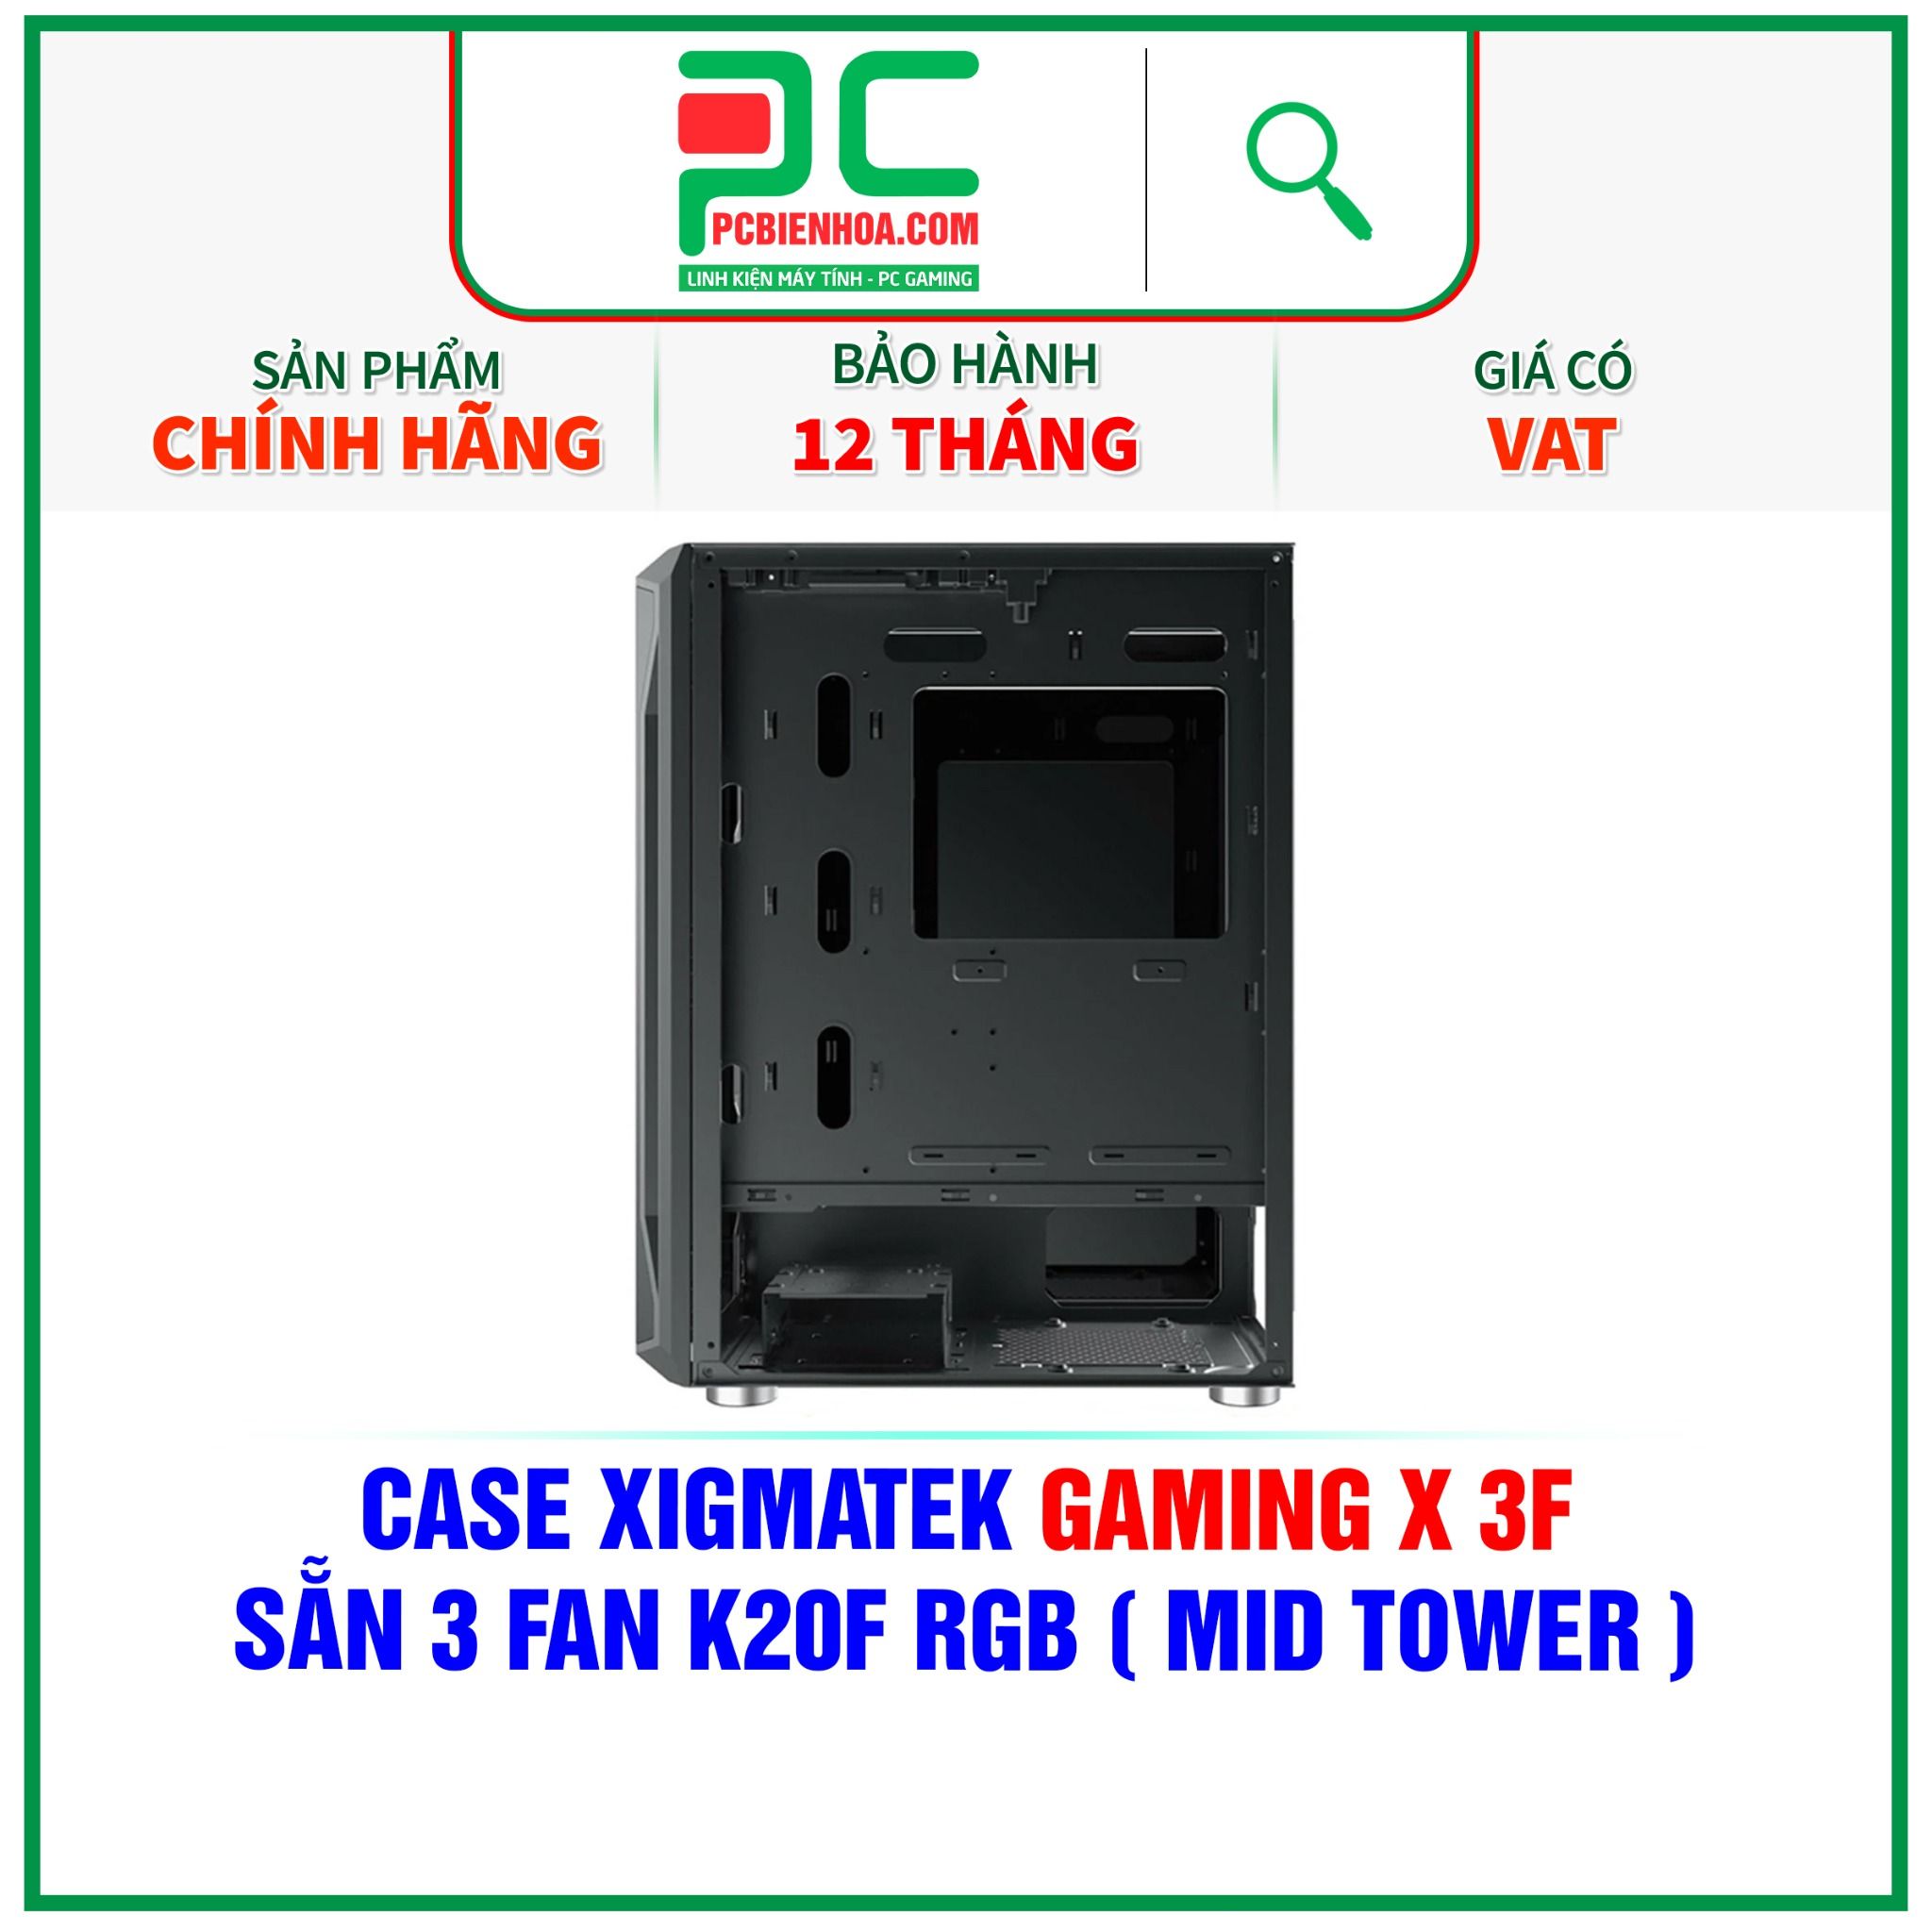  CASE XIGMATEK GAMING X 3F - SẴN 3 FAN K20F RGB ( MID TOWER - EN49899 ) 